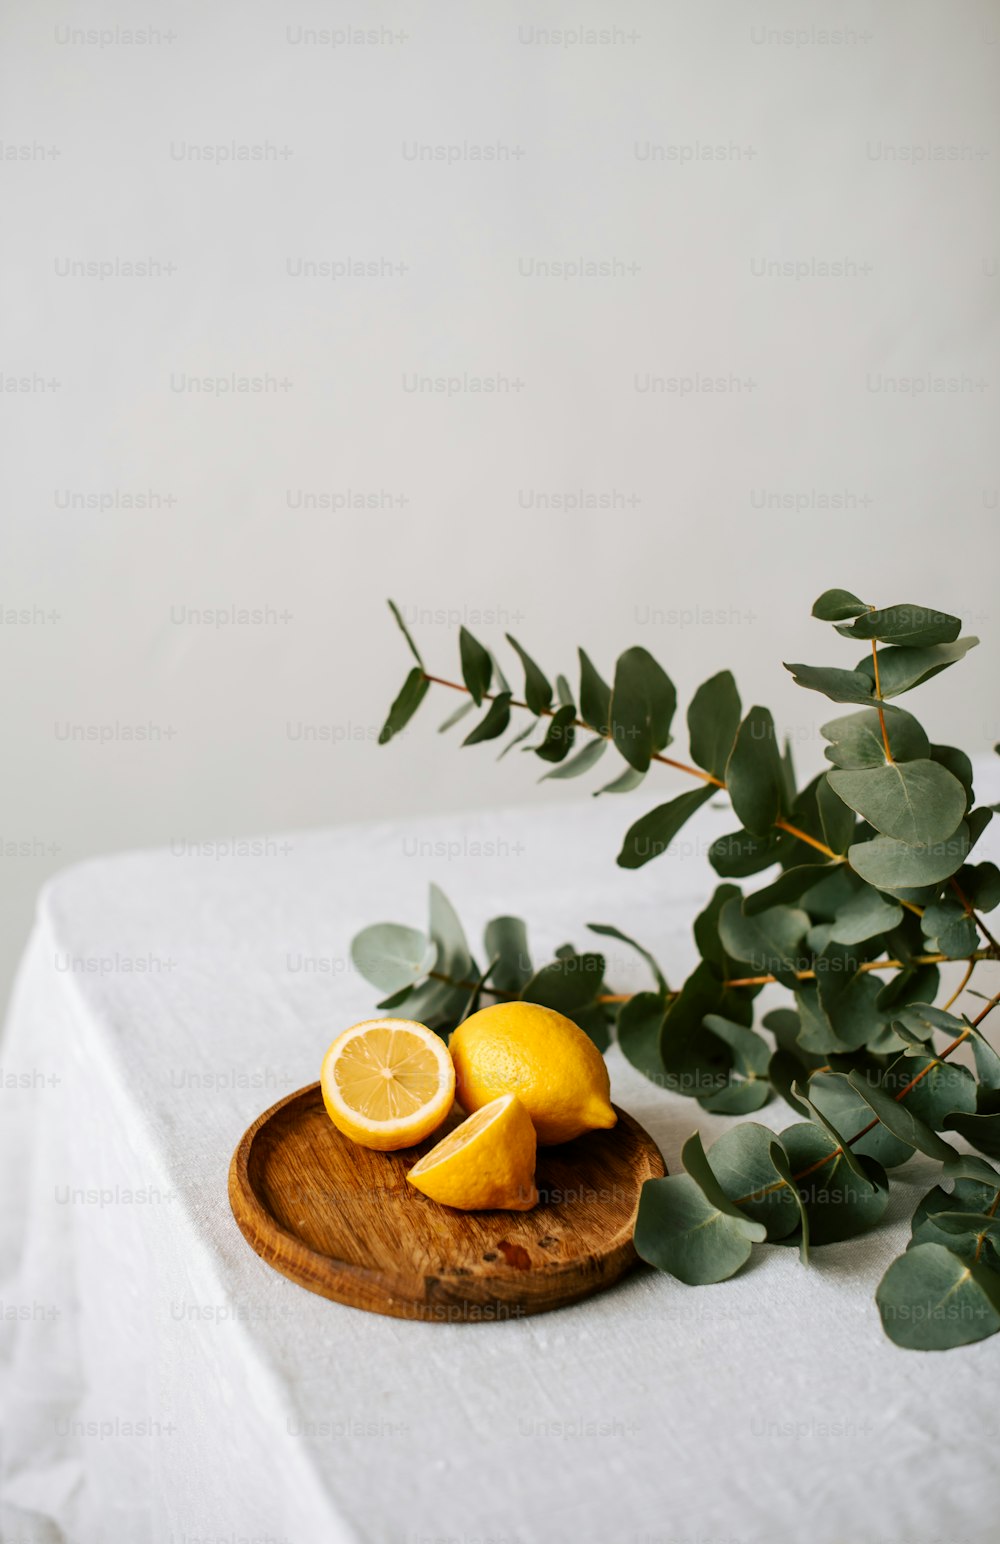 緑の植物の隣にスライスしたレモンをトッピングした木製の皿